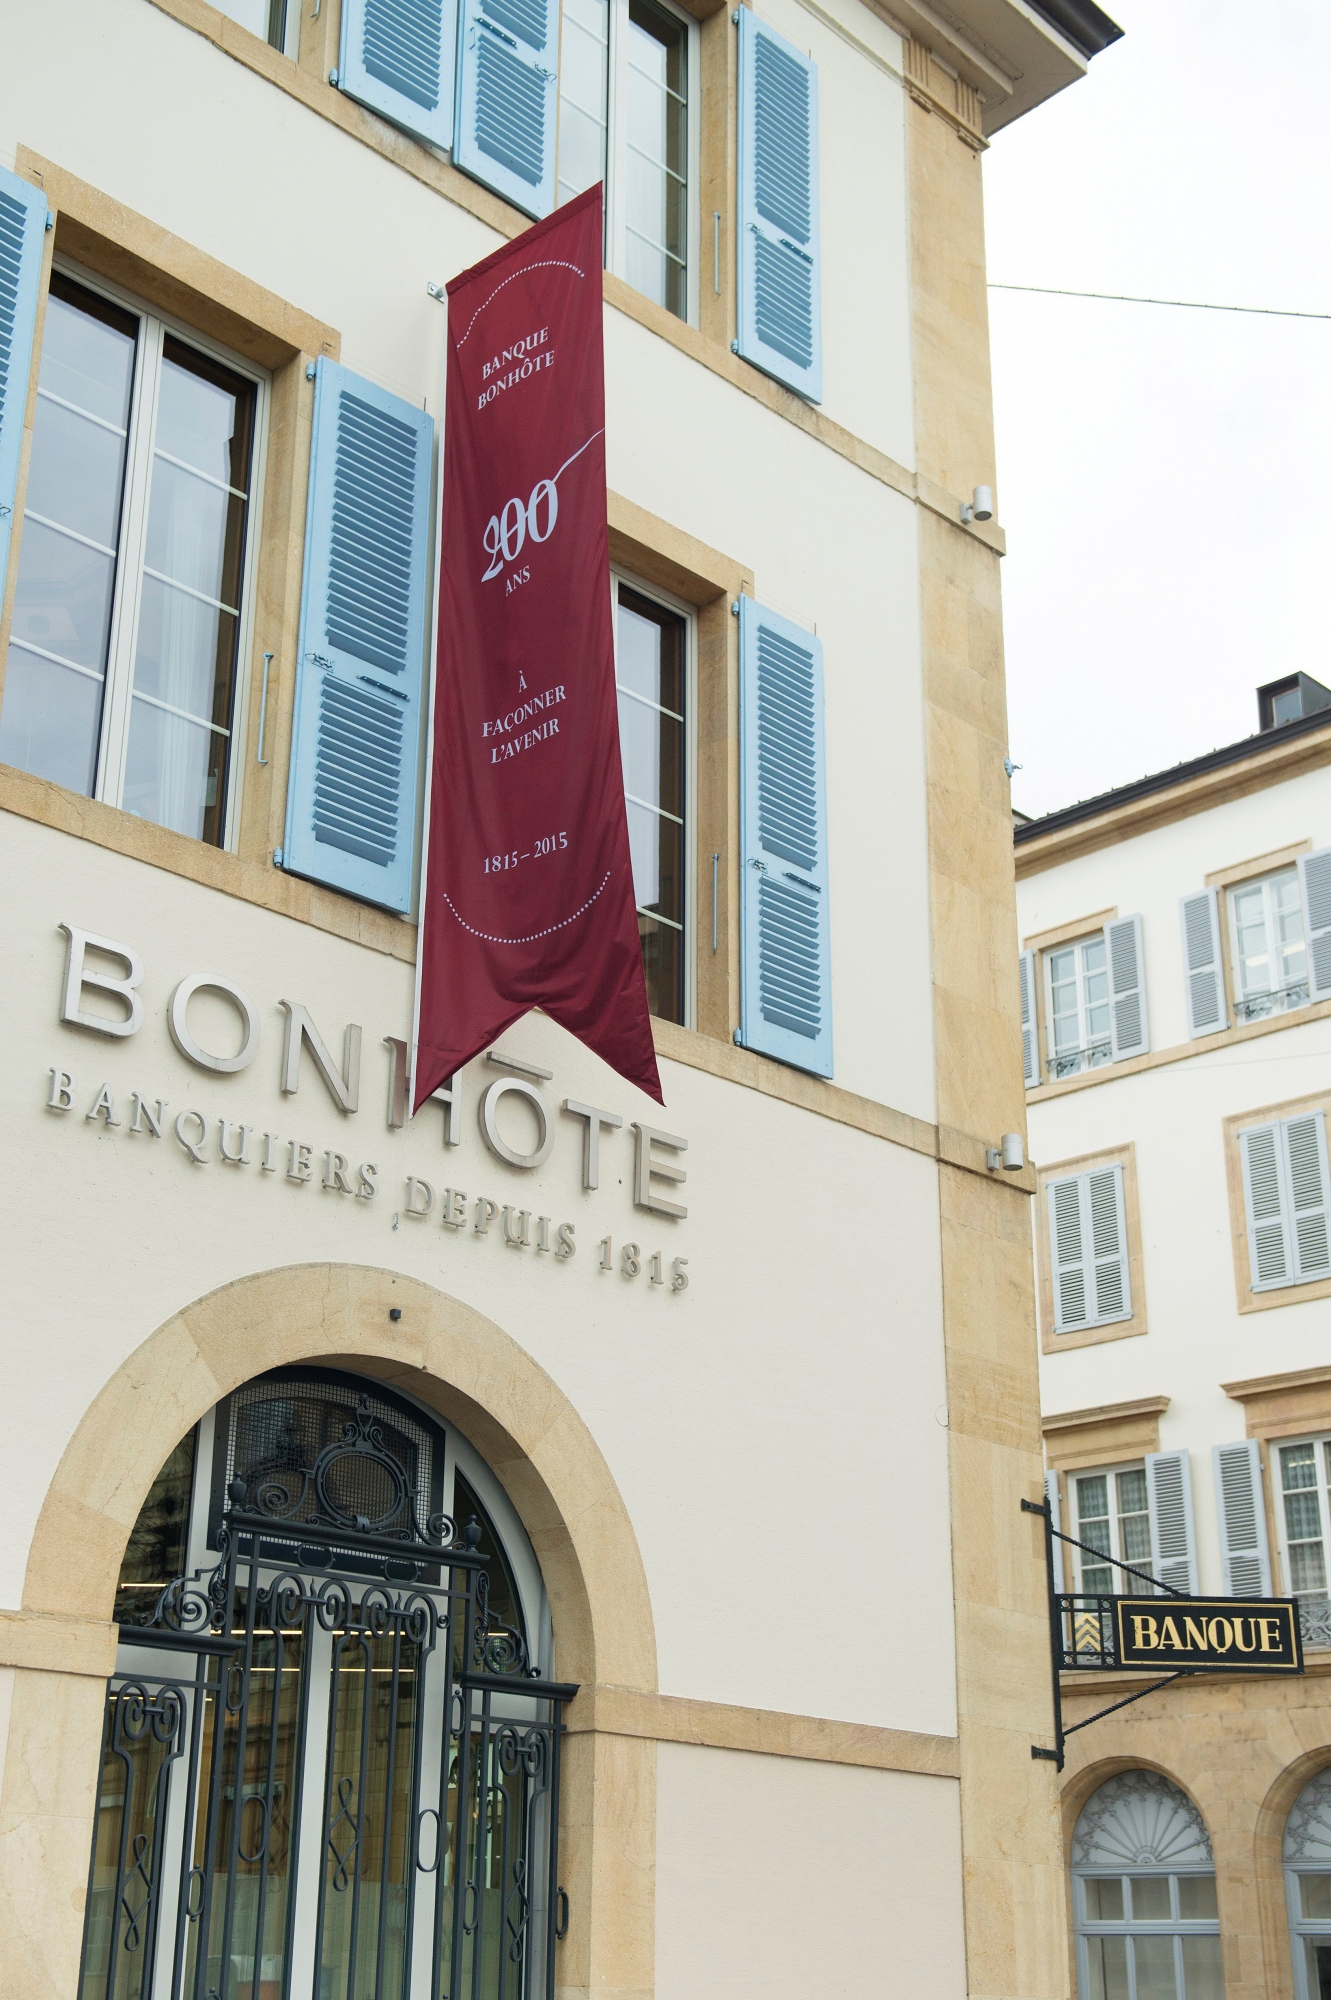 Banque Bonhote quai Ostervald

Neuchatel, 01 04 2015
Photo David Marchon NEUCHATEL